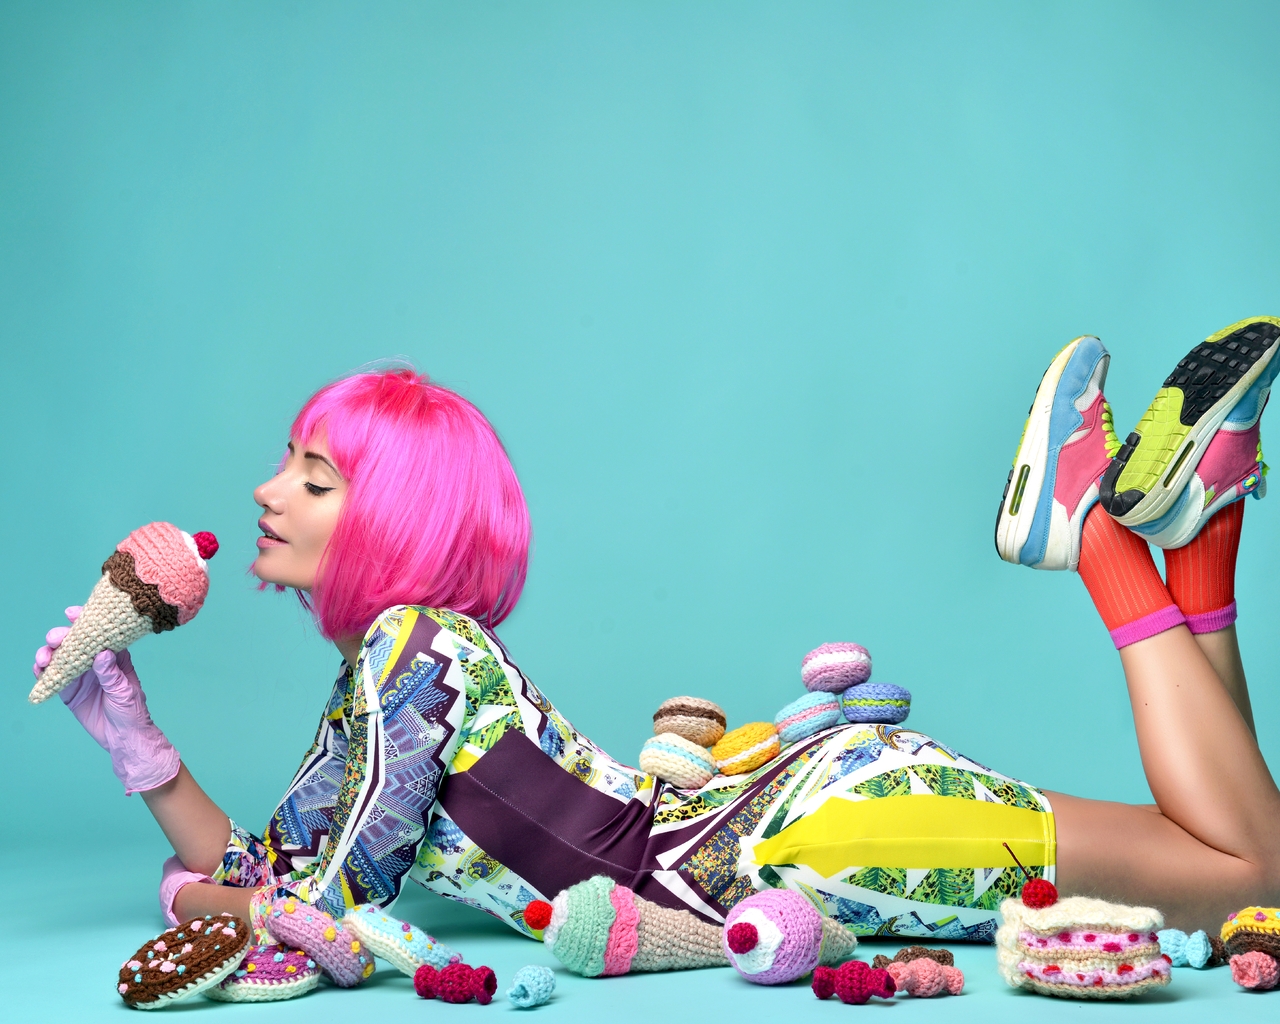 Картинка: Девушка, лежит, стиль, продукты, вязаное, мороженое, пироженки, бублики, фон